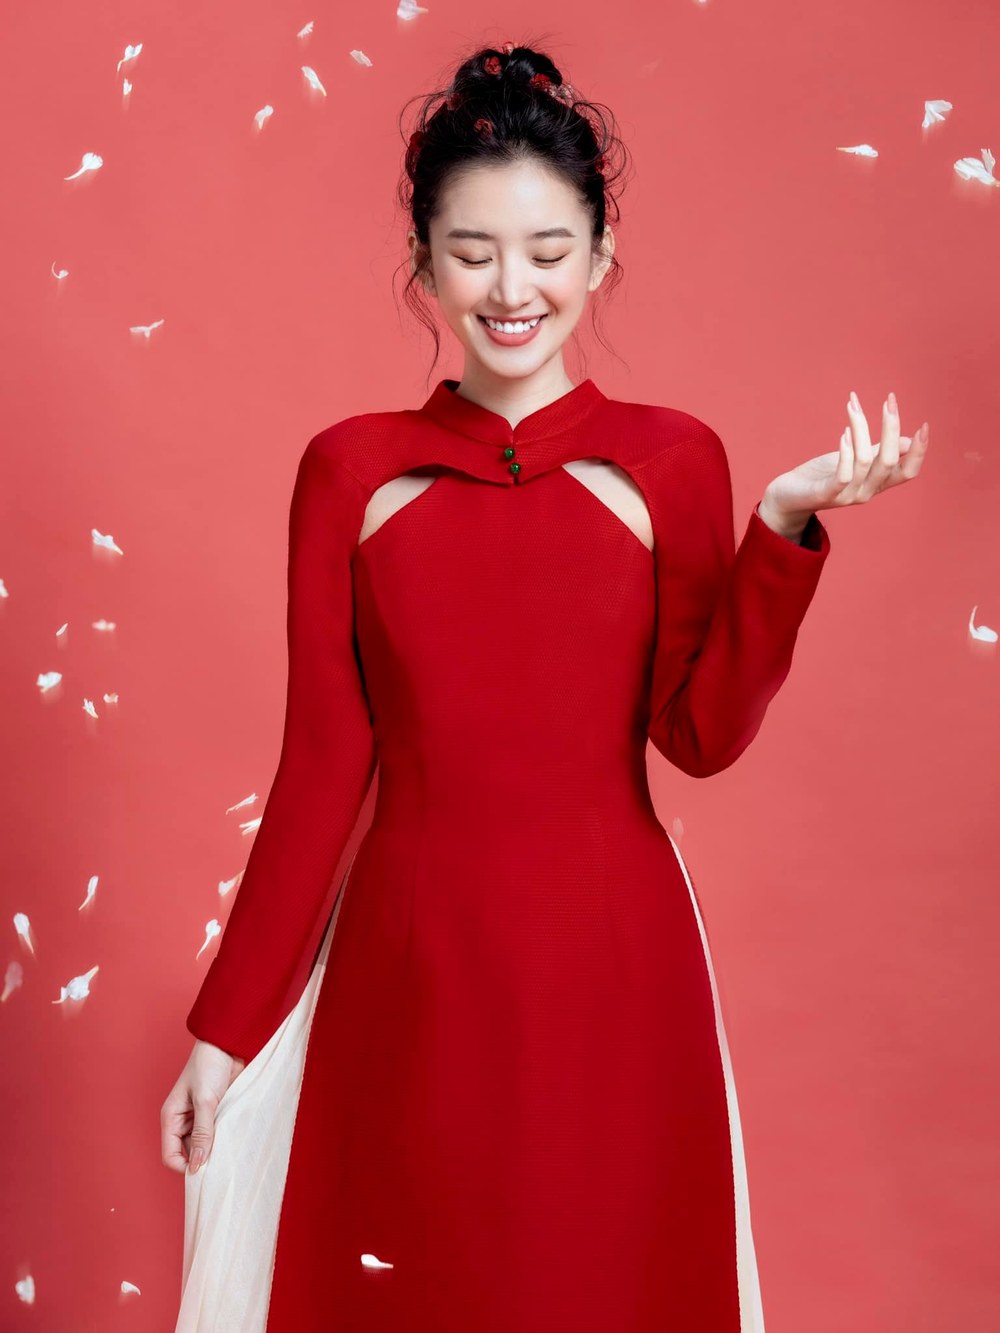 Trâm Ngô rạng rỡ trong bộ áo dài đỏ đậm màu sắc Tết Việt.